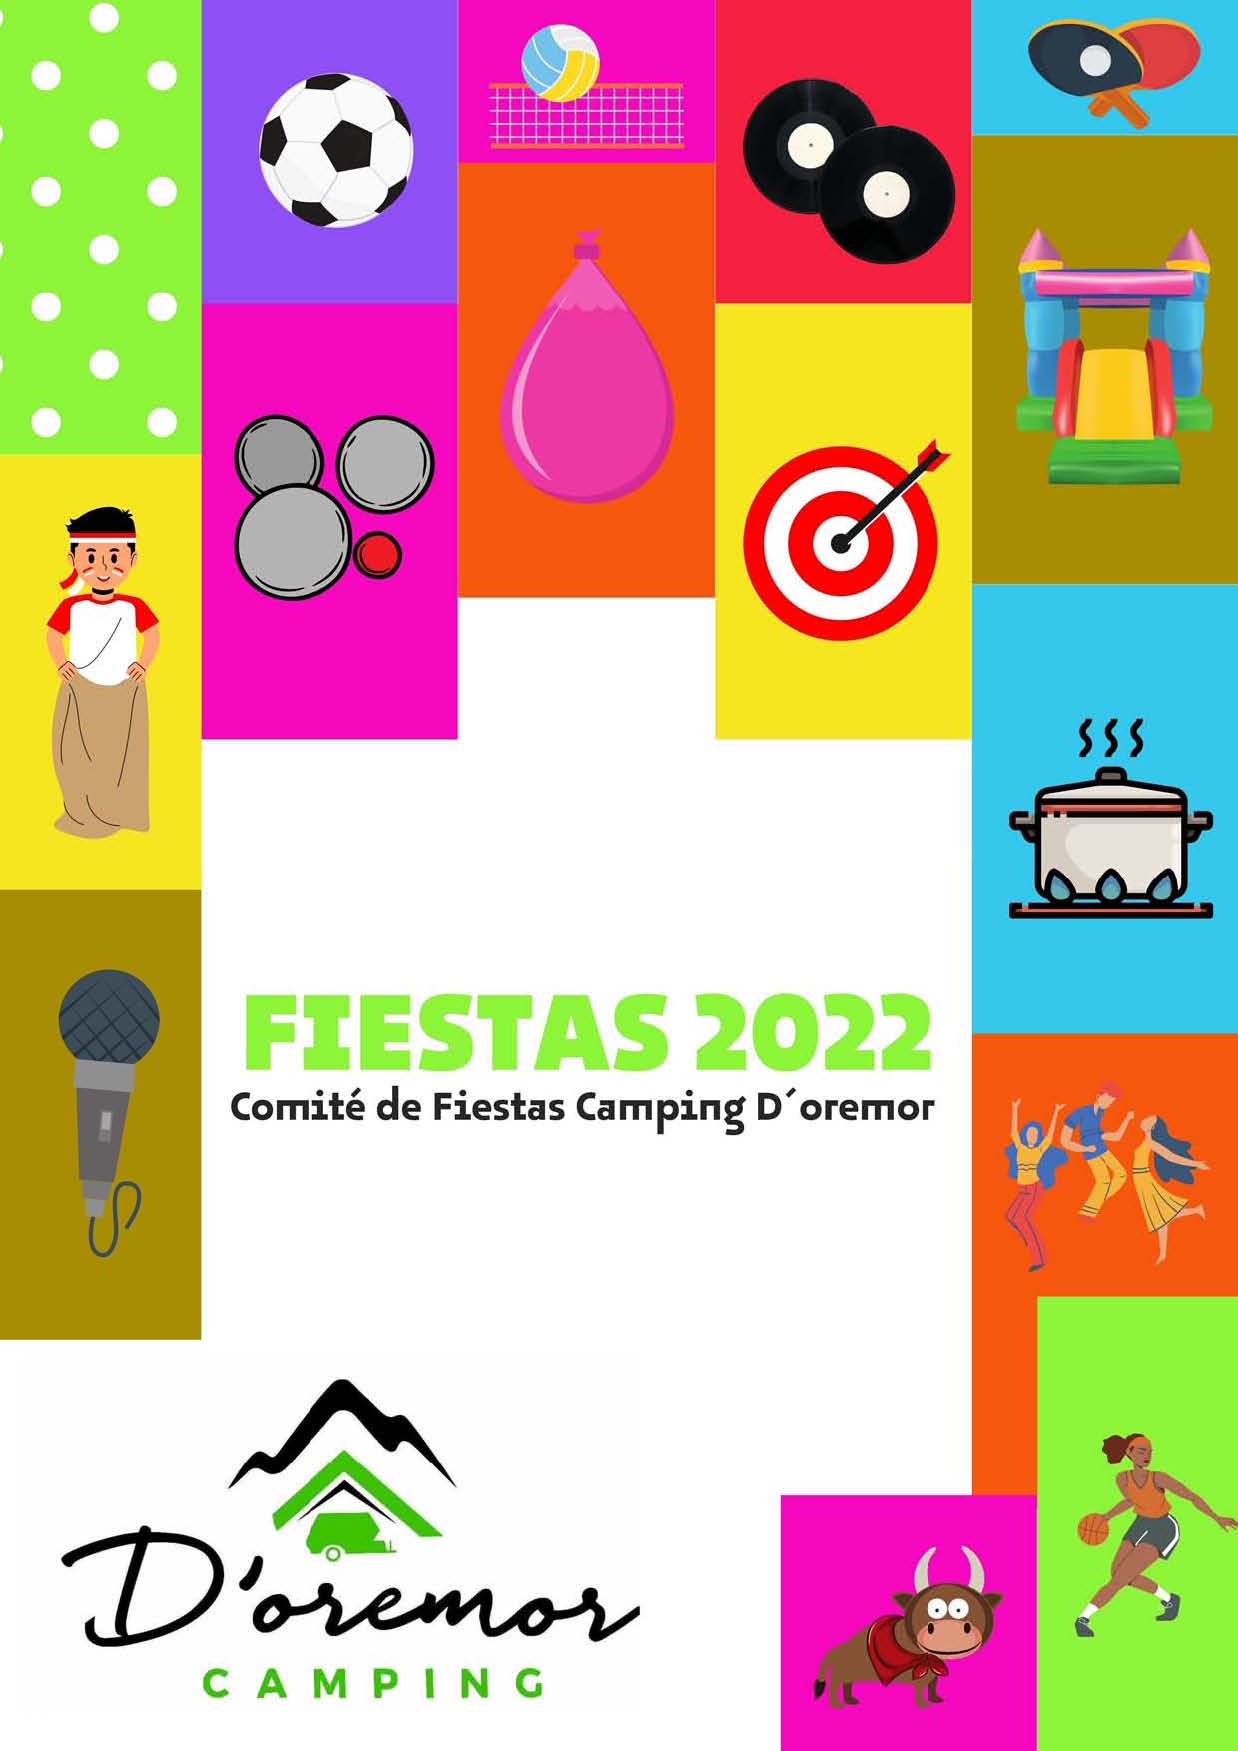 Fiestas 2022 Camping D'OREMOR